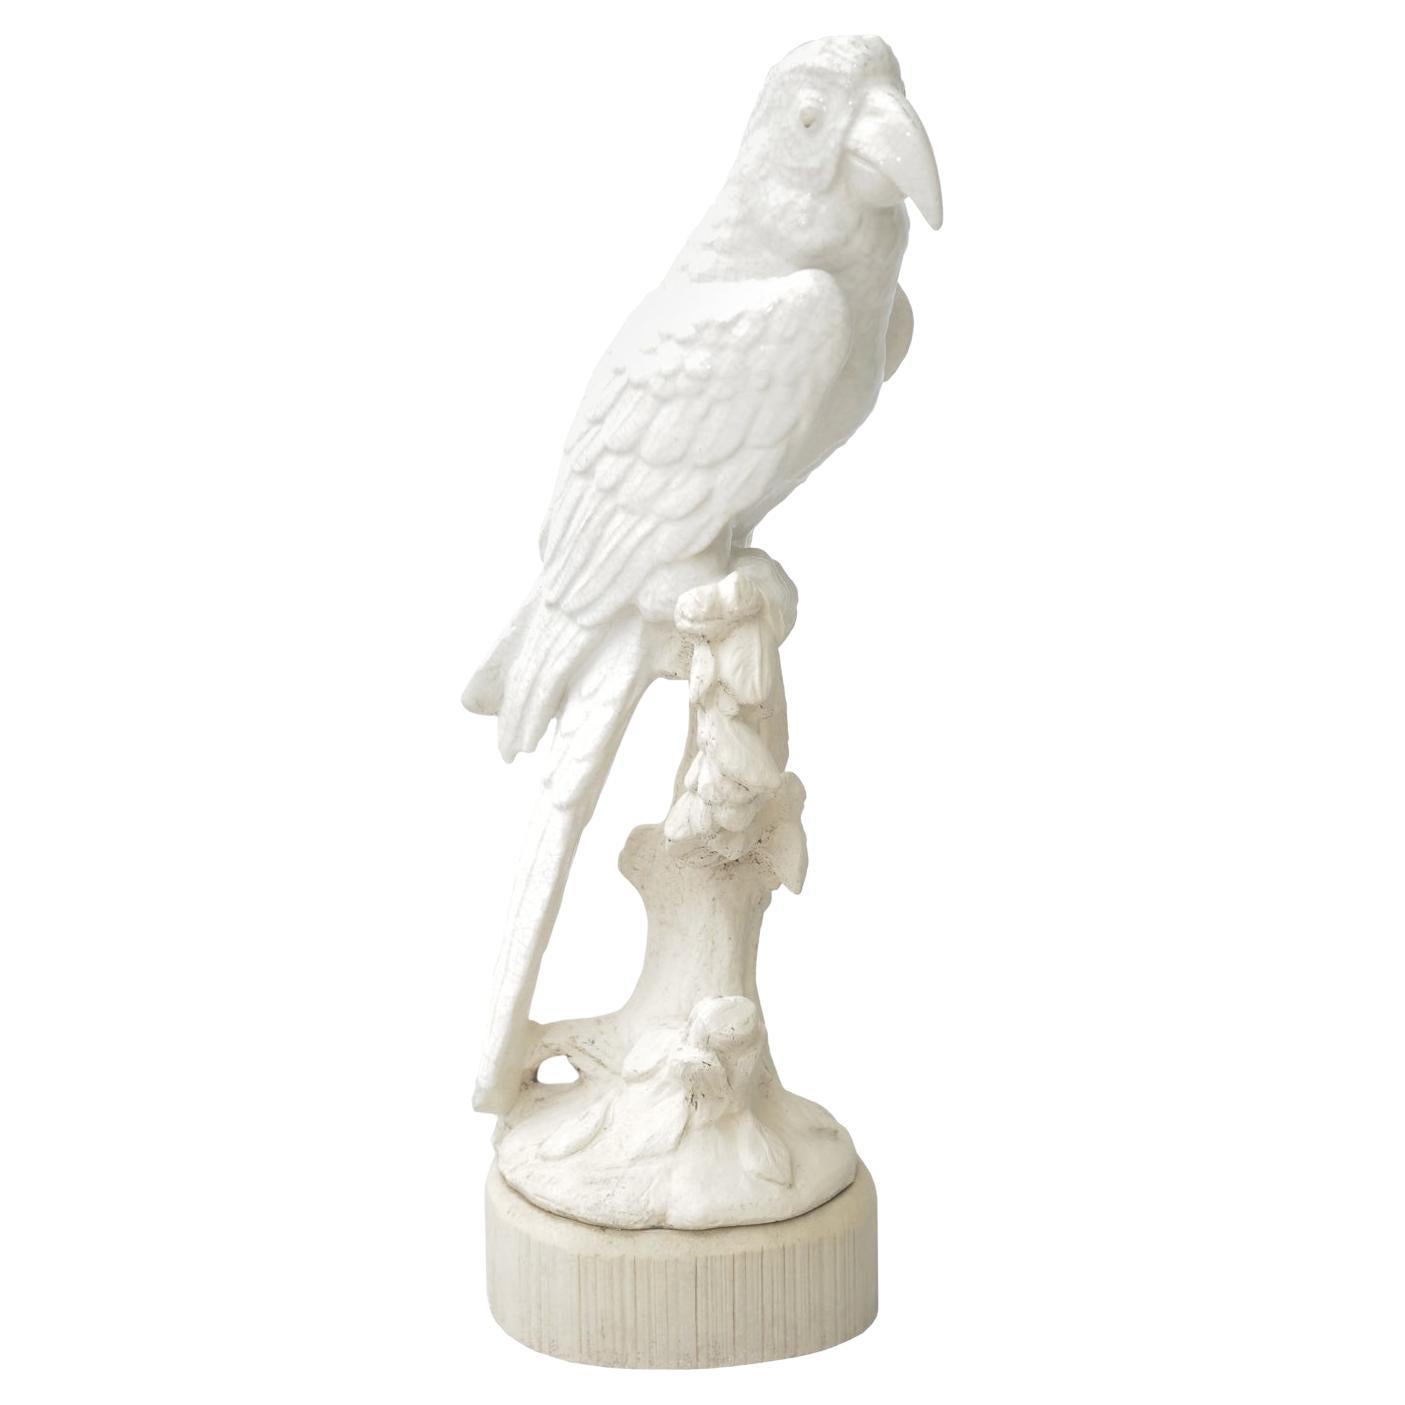 Pottery Parrot Sculpture For Sale